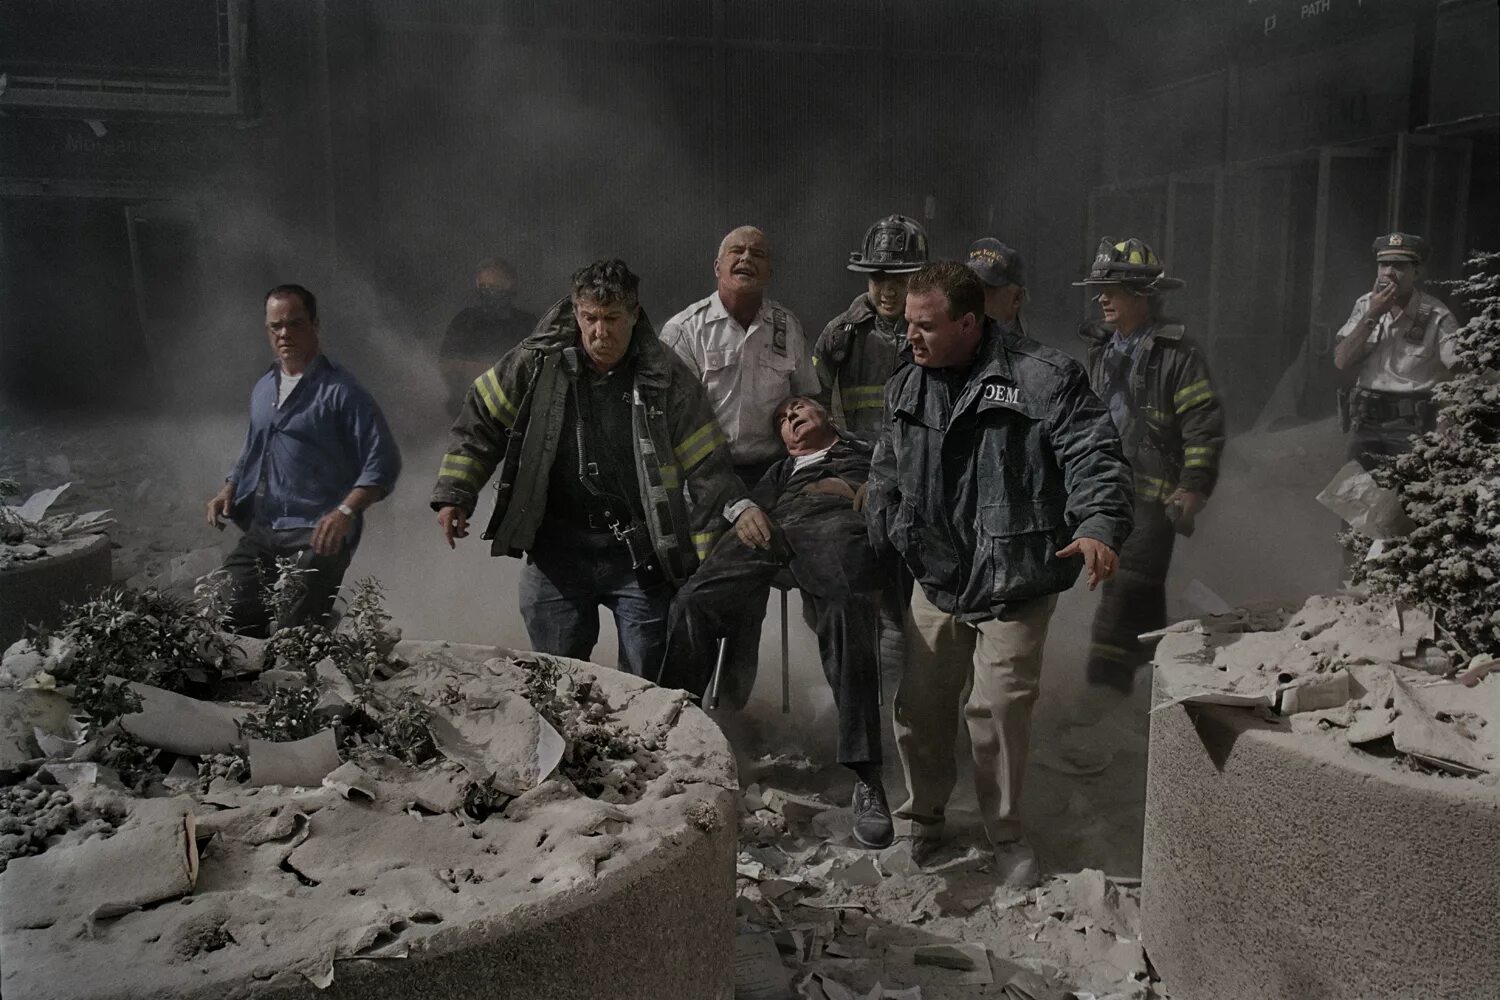 Башни-Близнецы 11 сентября 2001. Спасатели 11 сентября 2001. Жертвы 11 сентября 2001 года. Башни Близнецы 11 сентября жертвы.